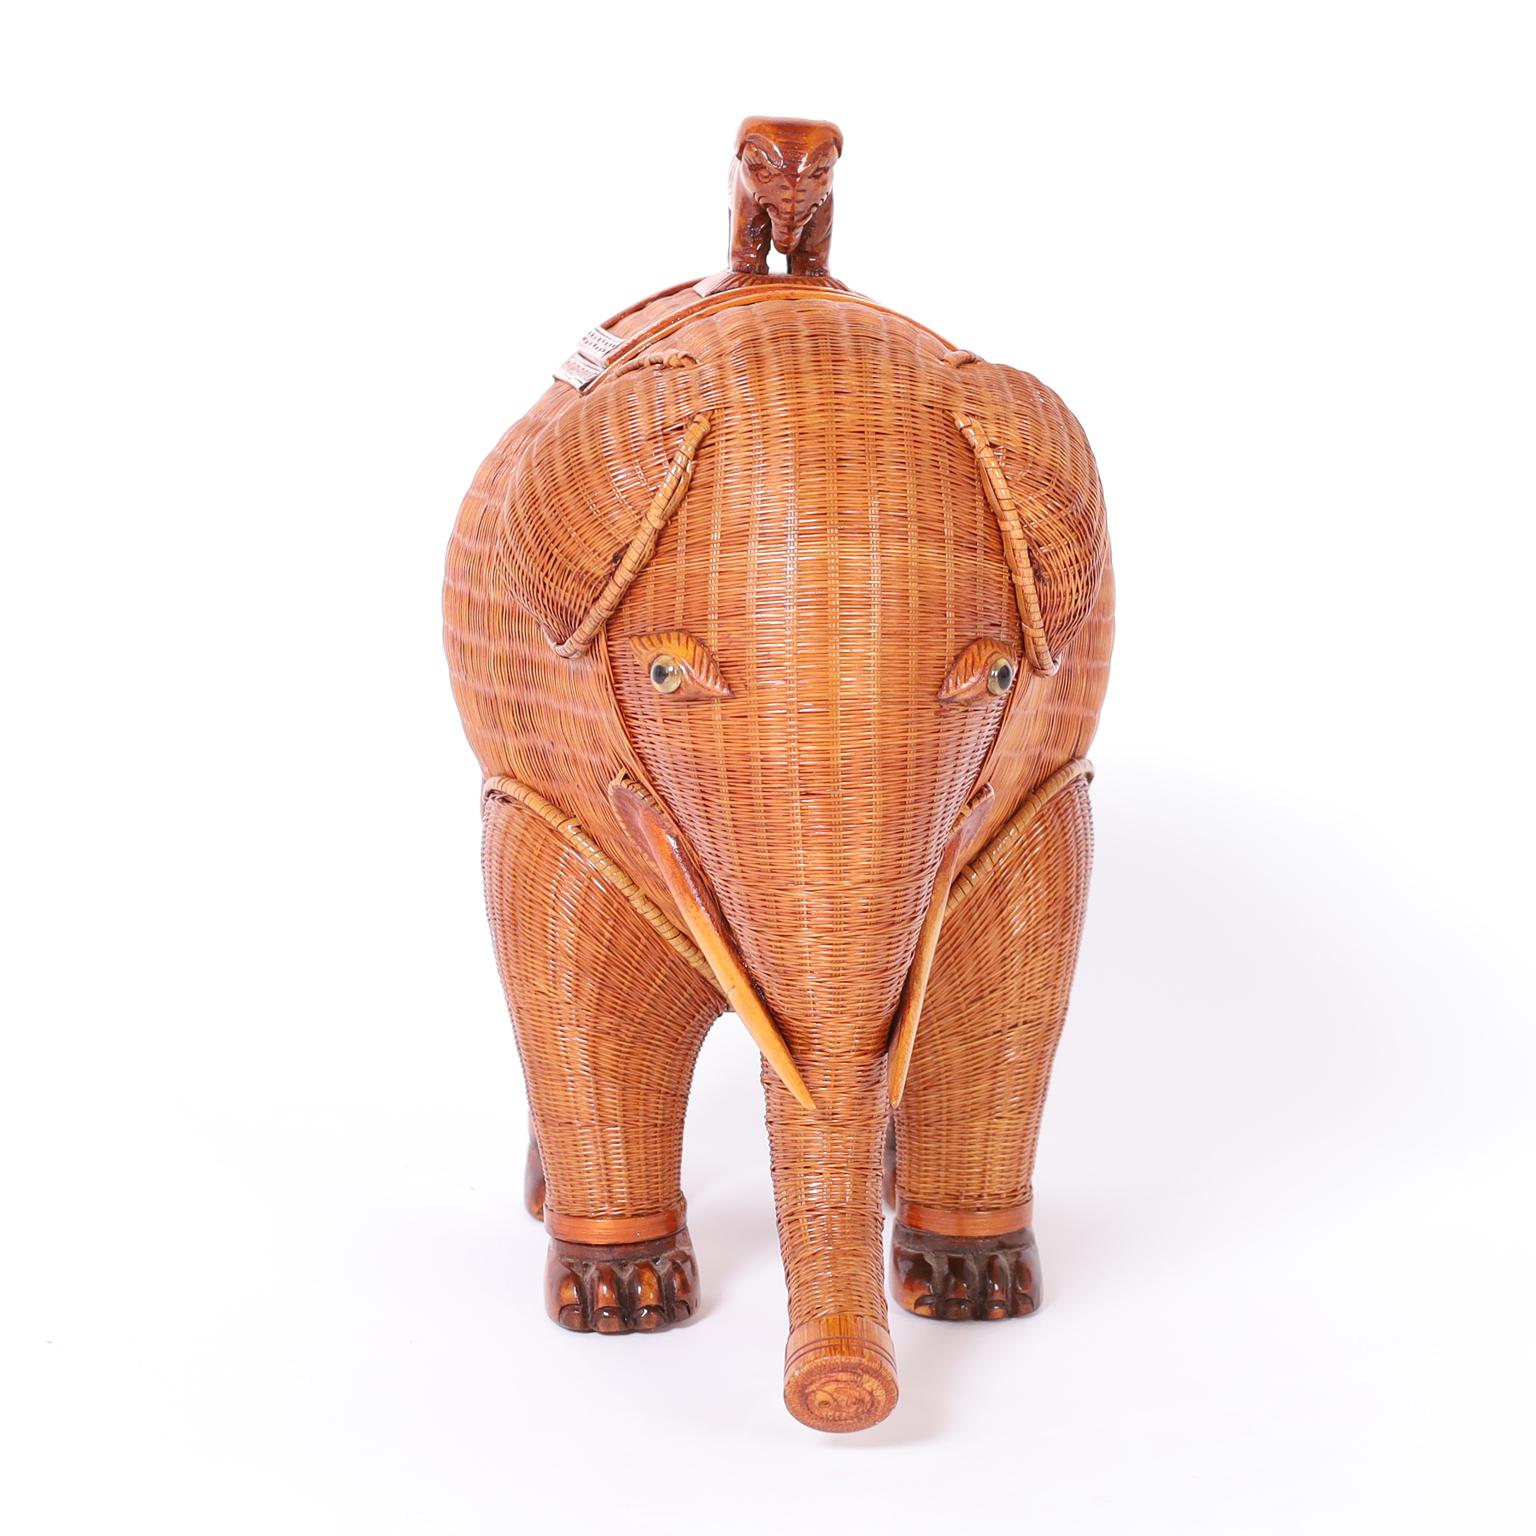 Boîte à éléphant chinoise ambitieusement fabriquée en osier avec des défenses, des pieds et une poignée de couvercle en bois sculpté. De la célèbre collection de Shanghai.